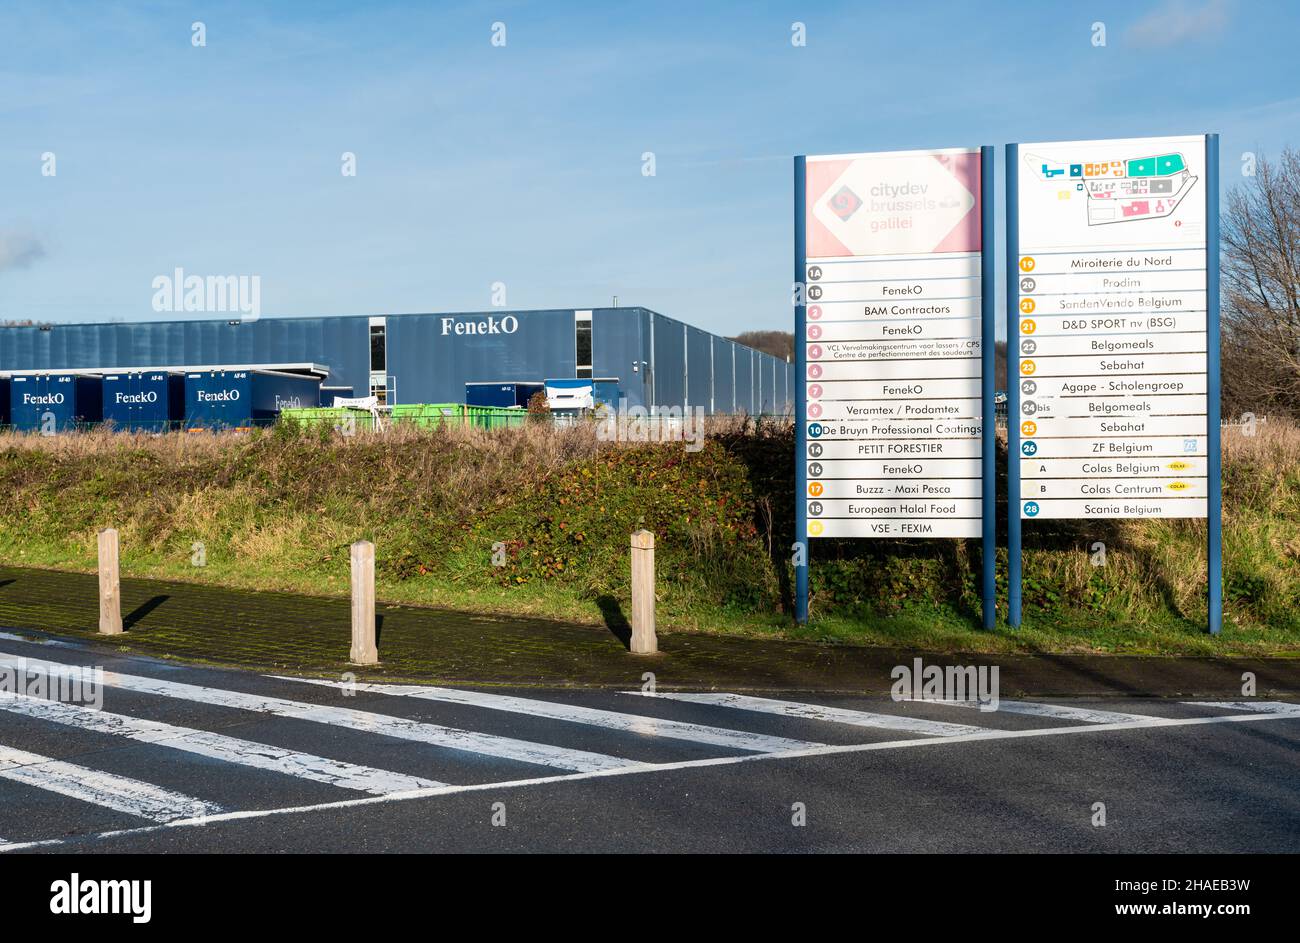 Neder-over-Heembeek, Bruxelles, Belgio - 12 11 2021: Direzioni dei siti industriali e la società di costruzioni in alluminio Feneko Foto Stock